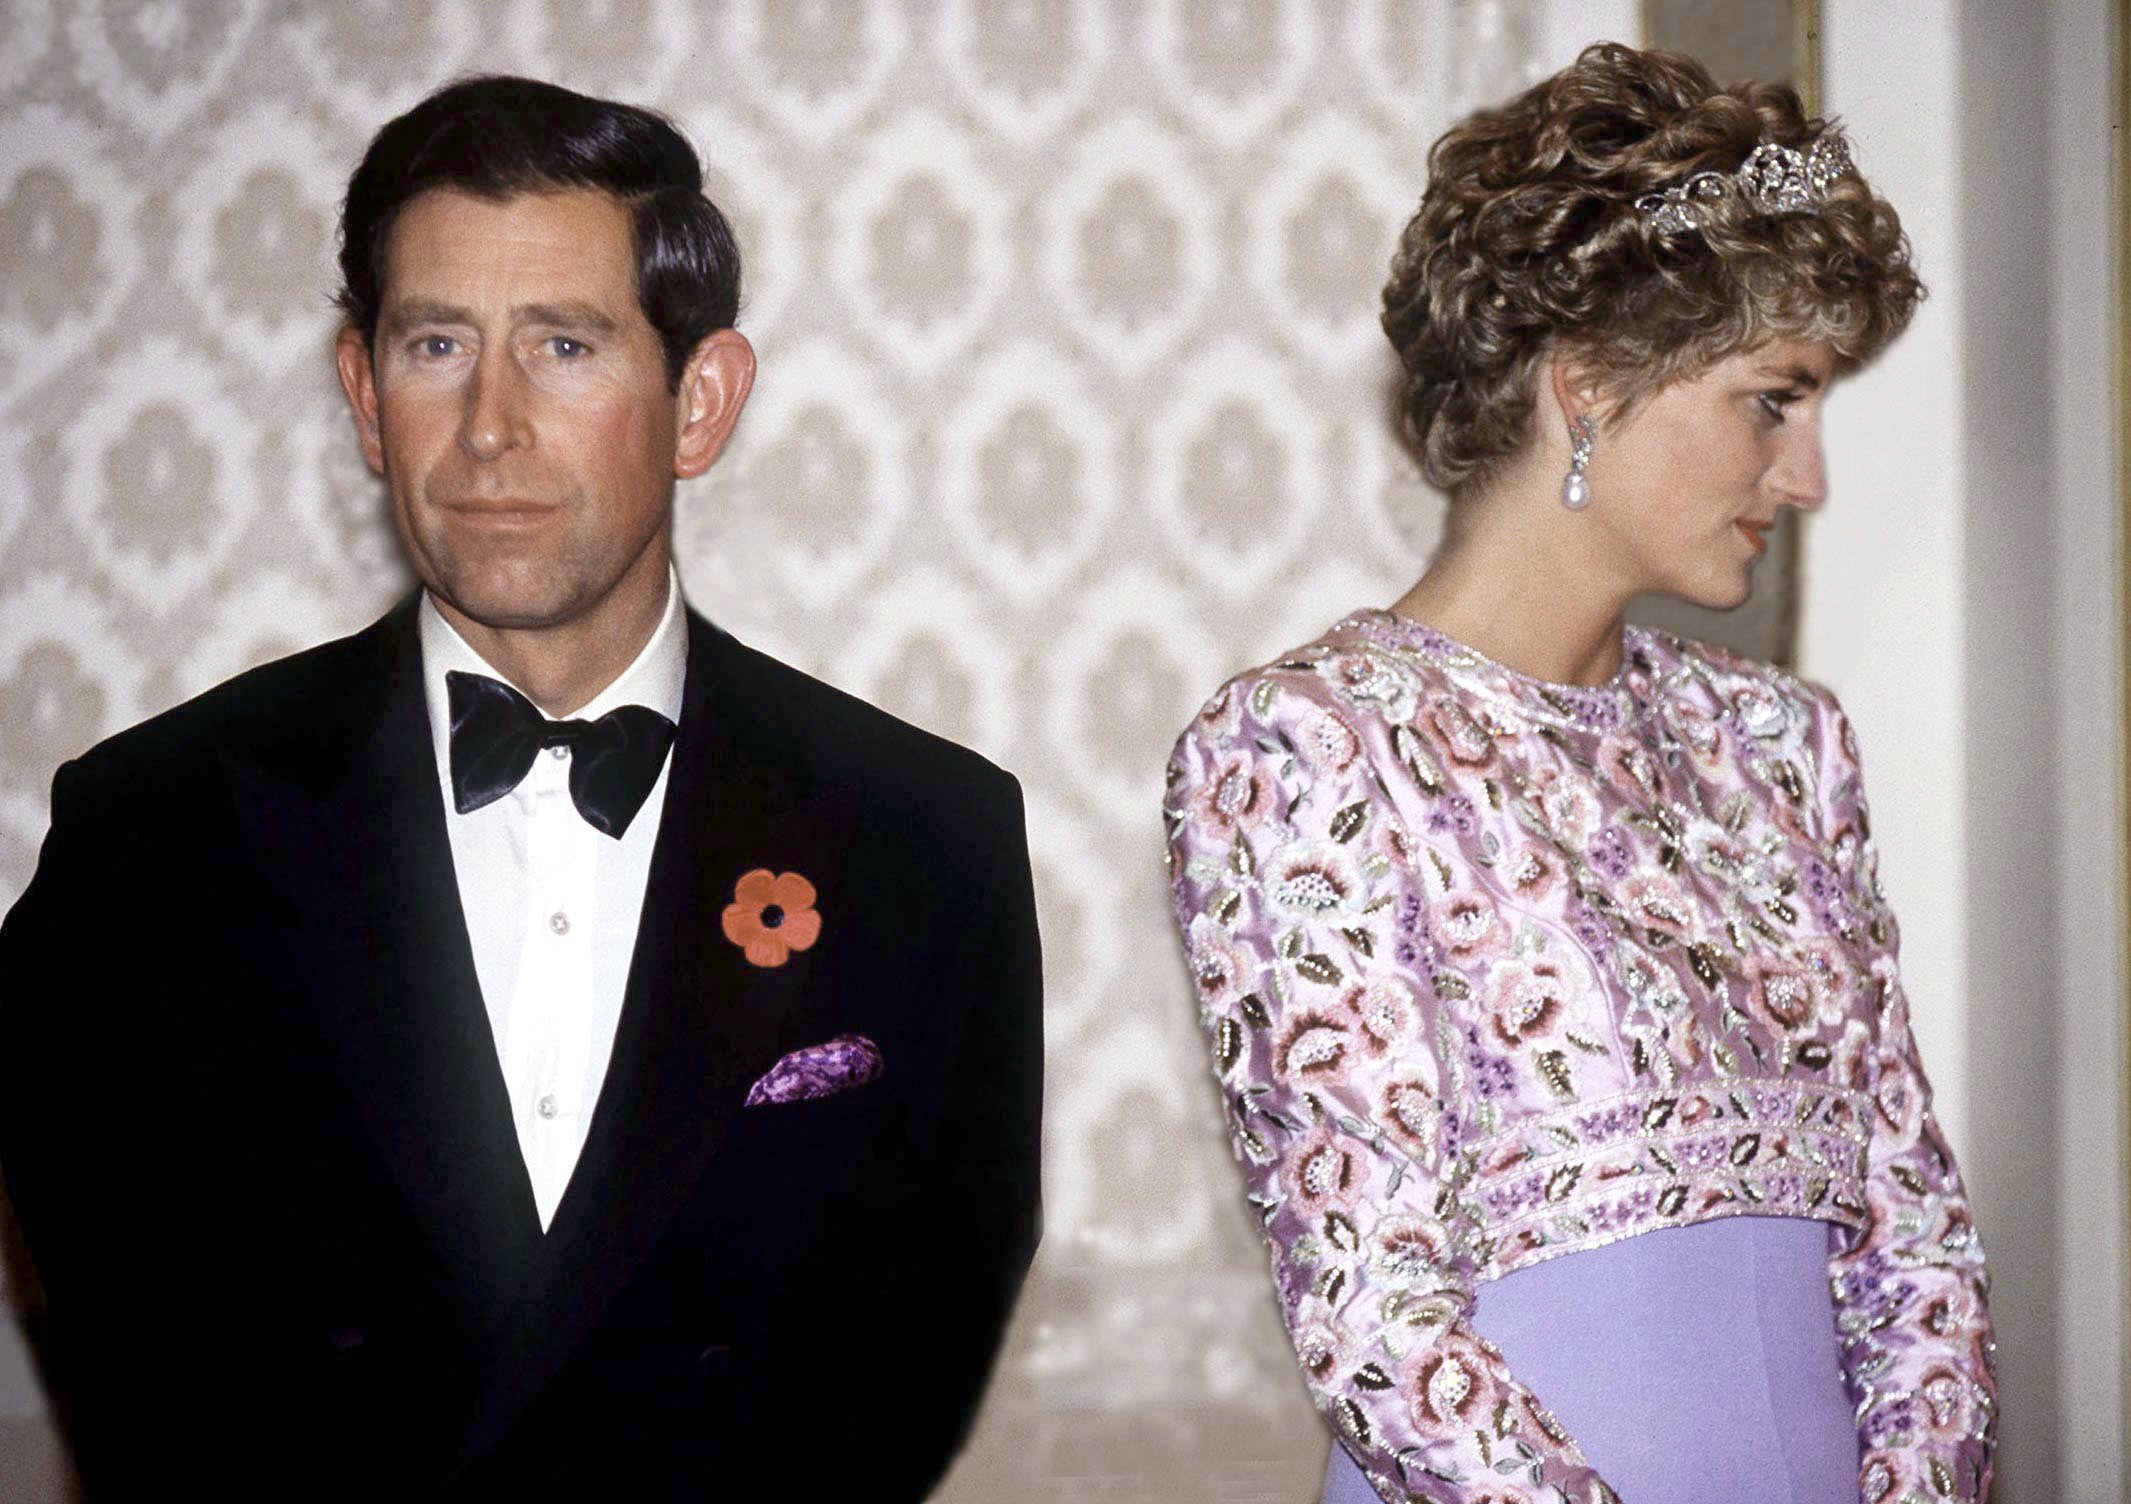  Le Prince Charles et la Princesse Diana lors de leur dernier voyage officiel ensemble | photo : Getty Images